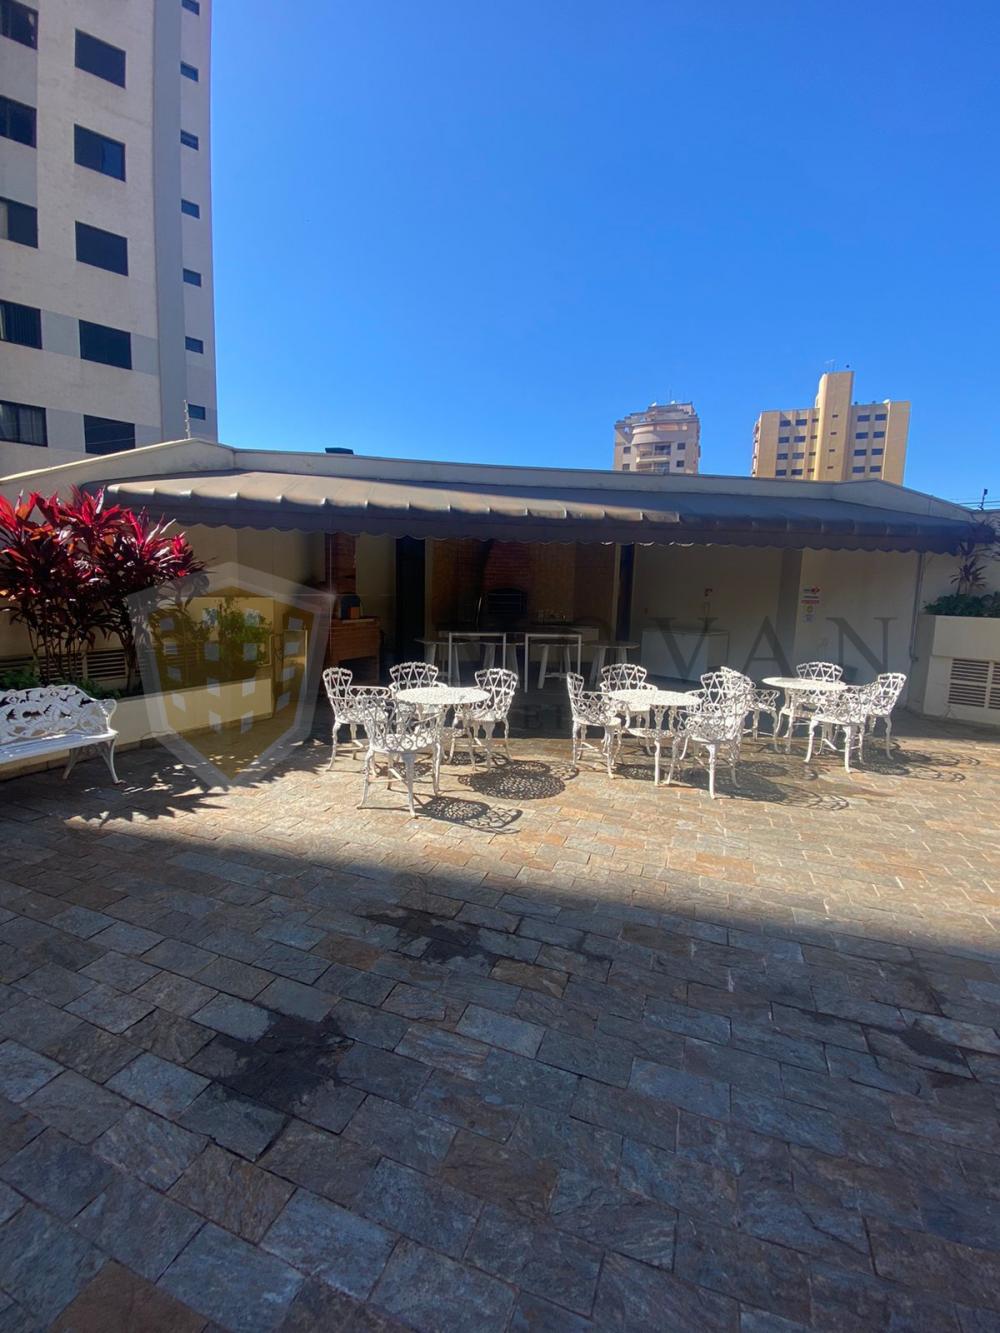 Alugar Apartamento / Padrão em Ribeirão Preto R$ 1.600,00 - Foto 23